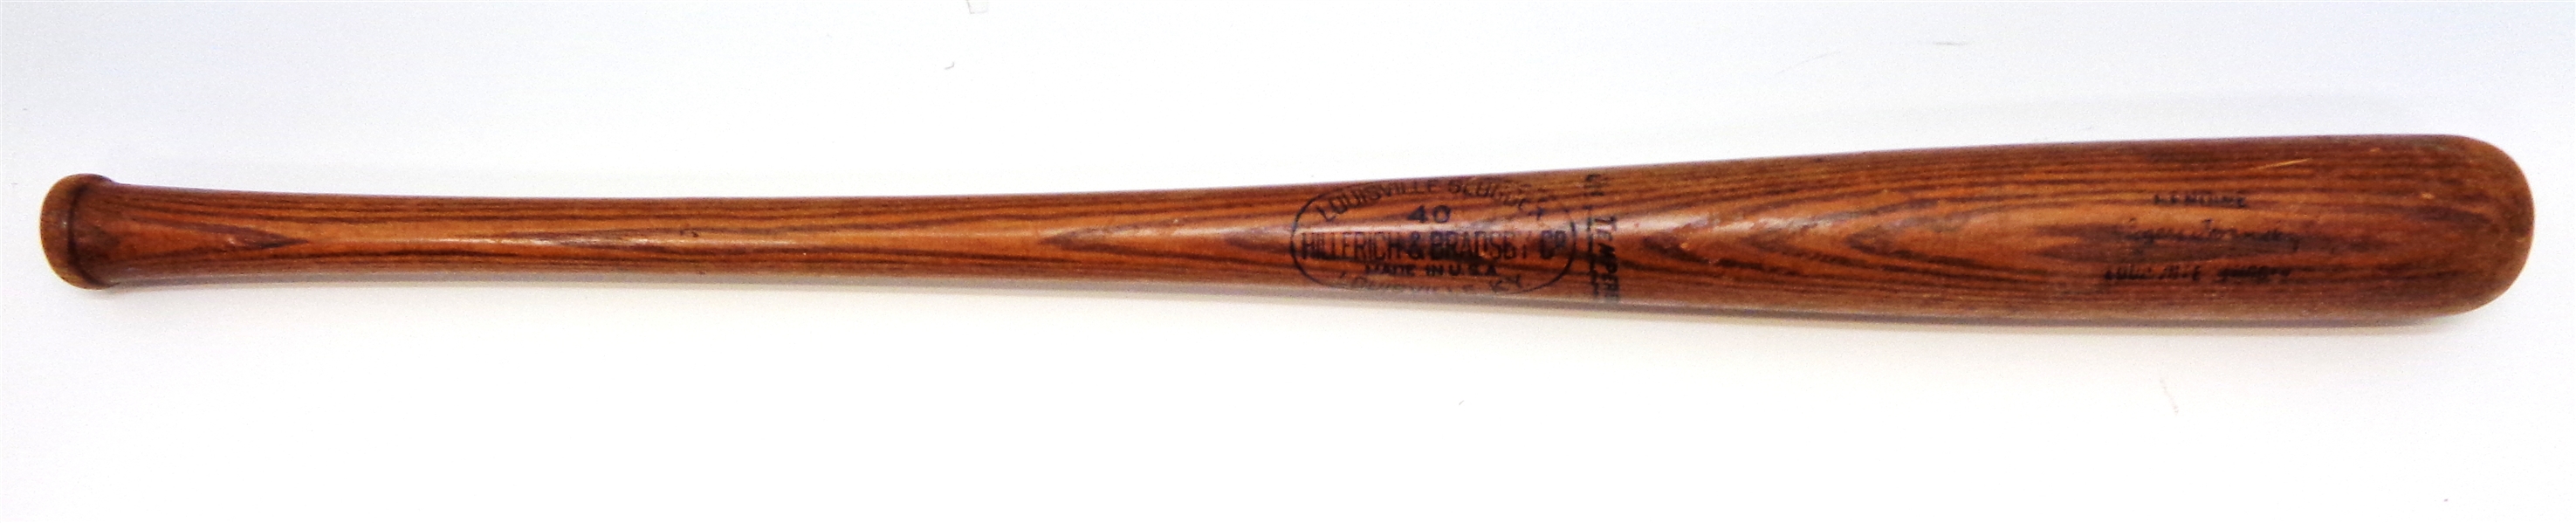 Rogers Hornsby Vintage Louisville Slugger Model Bat